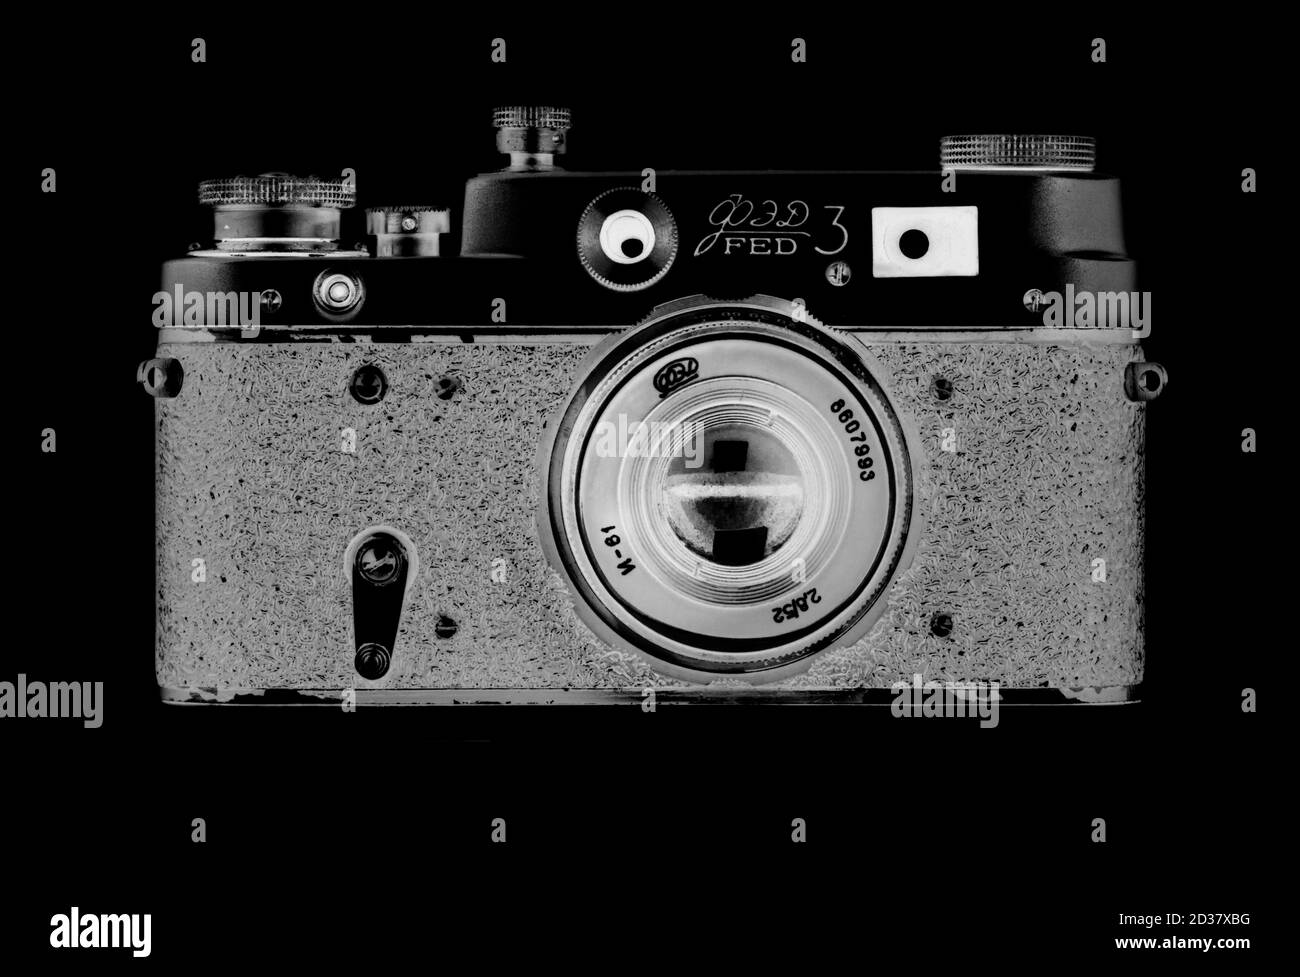 Ein Fine Art Bild einer alten russischen Fed 3 Kamera, aufgenommen in einem negativen Stil. Stockfoto